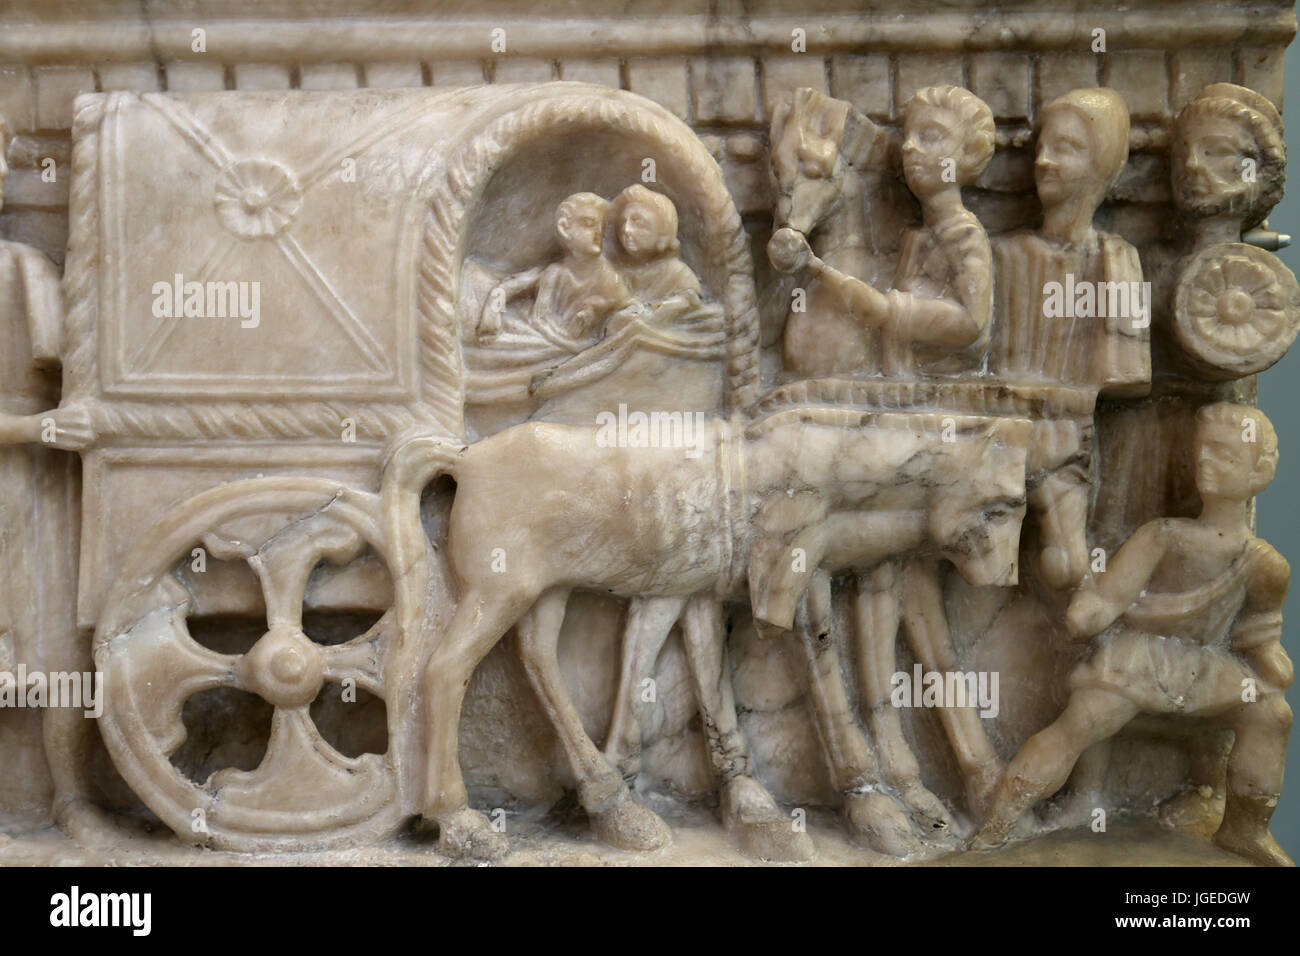 Urna cineraria. Paio di equitazione in un carro coperto (carpentum) sul loro viaggio negli inferi. Etrusca, 100-50 BC. Volterra, Italia. British Museum. Foto Stock